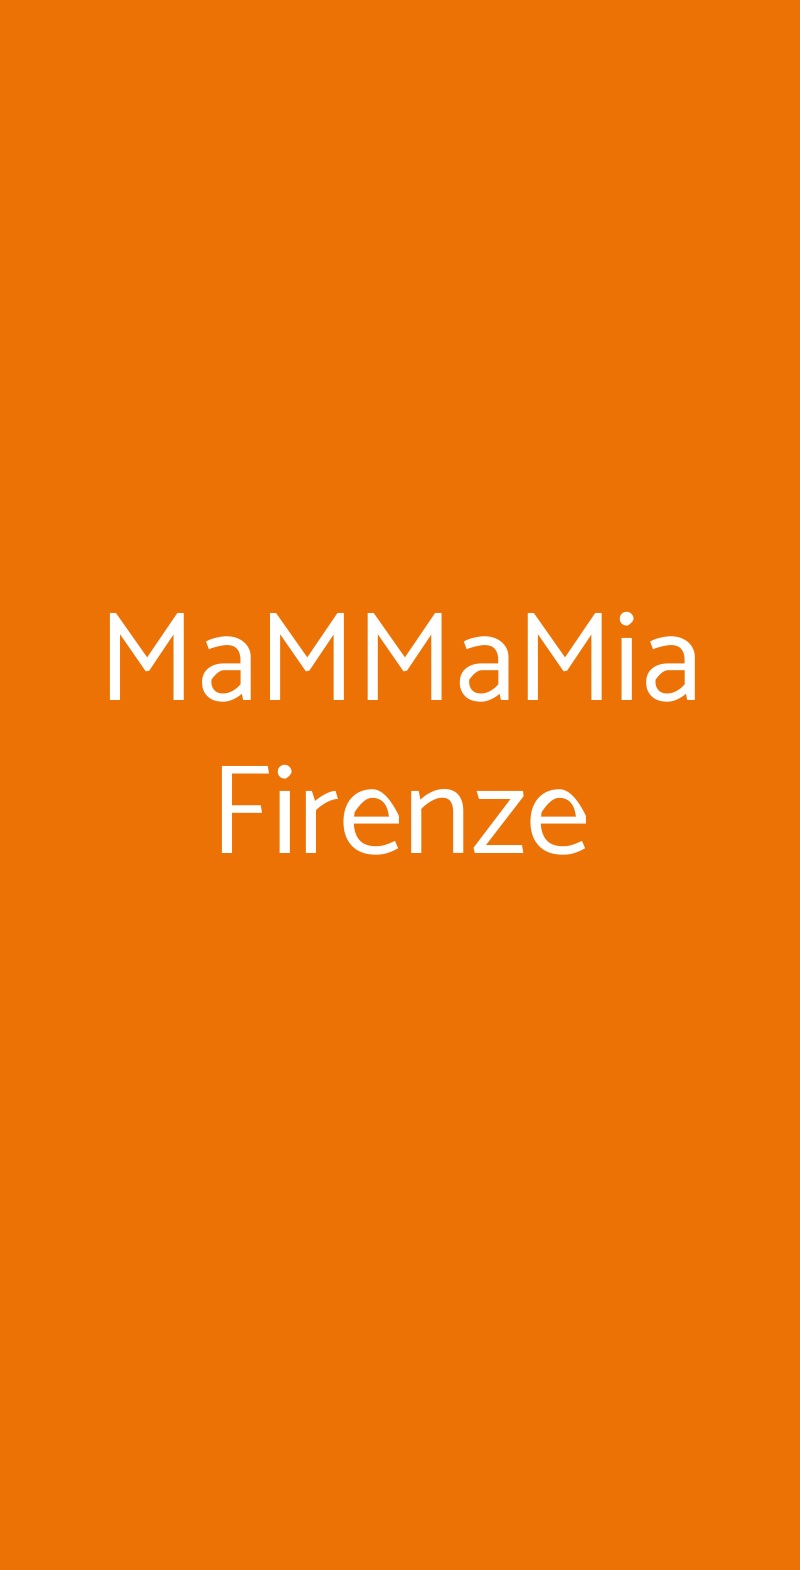 MaMMaMia Firenze Firenze menù 1 pagina